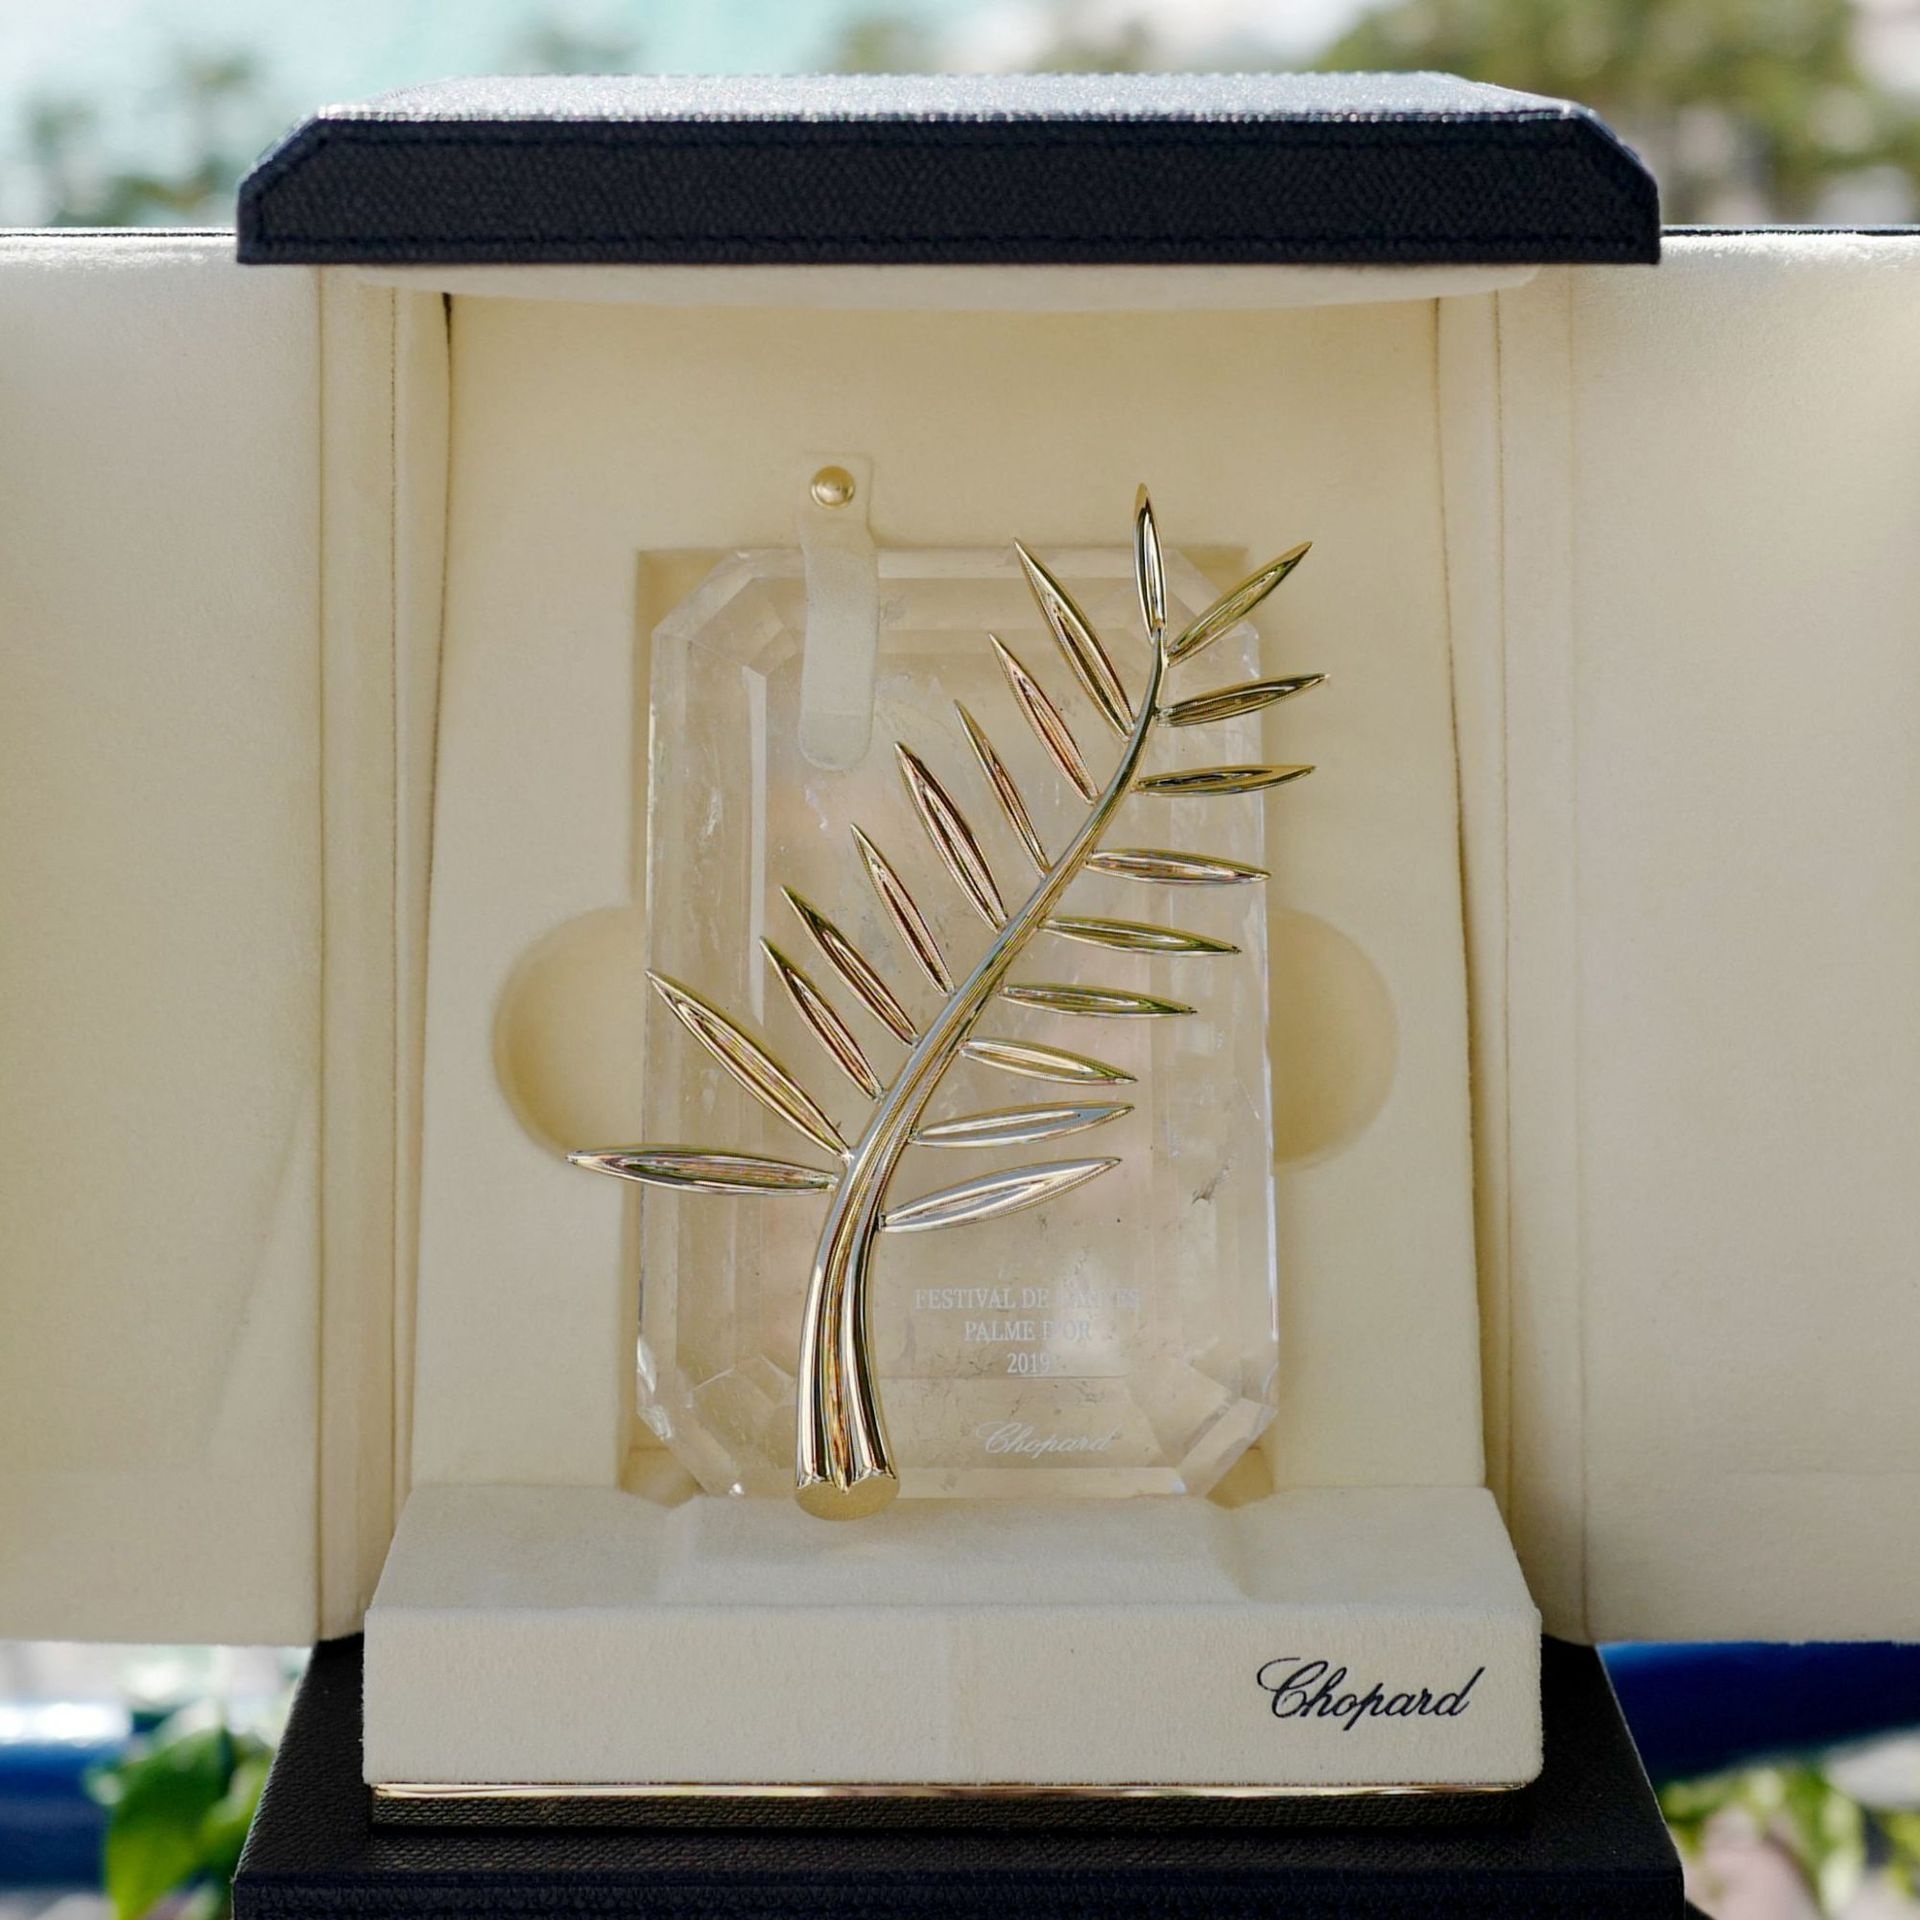 Golden Palm, 74th Festival de Cannes, En chiffres, 1920x1920 HD Phone